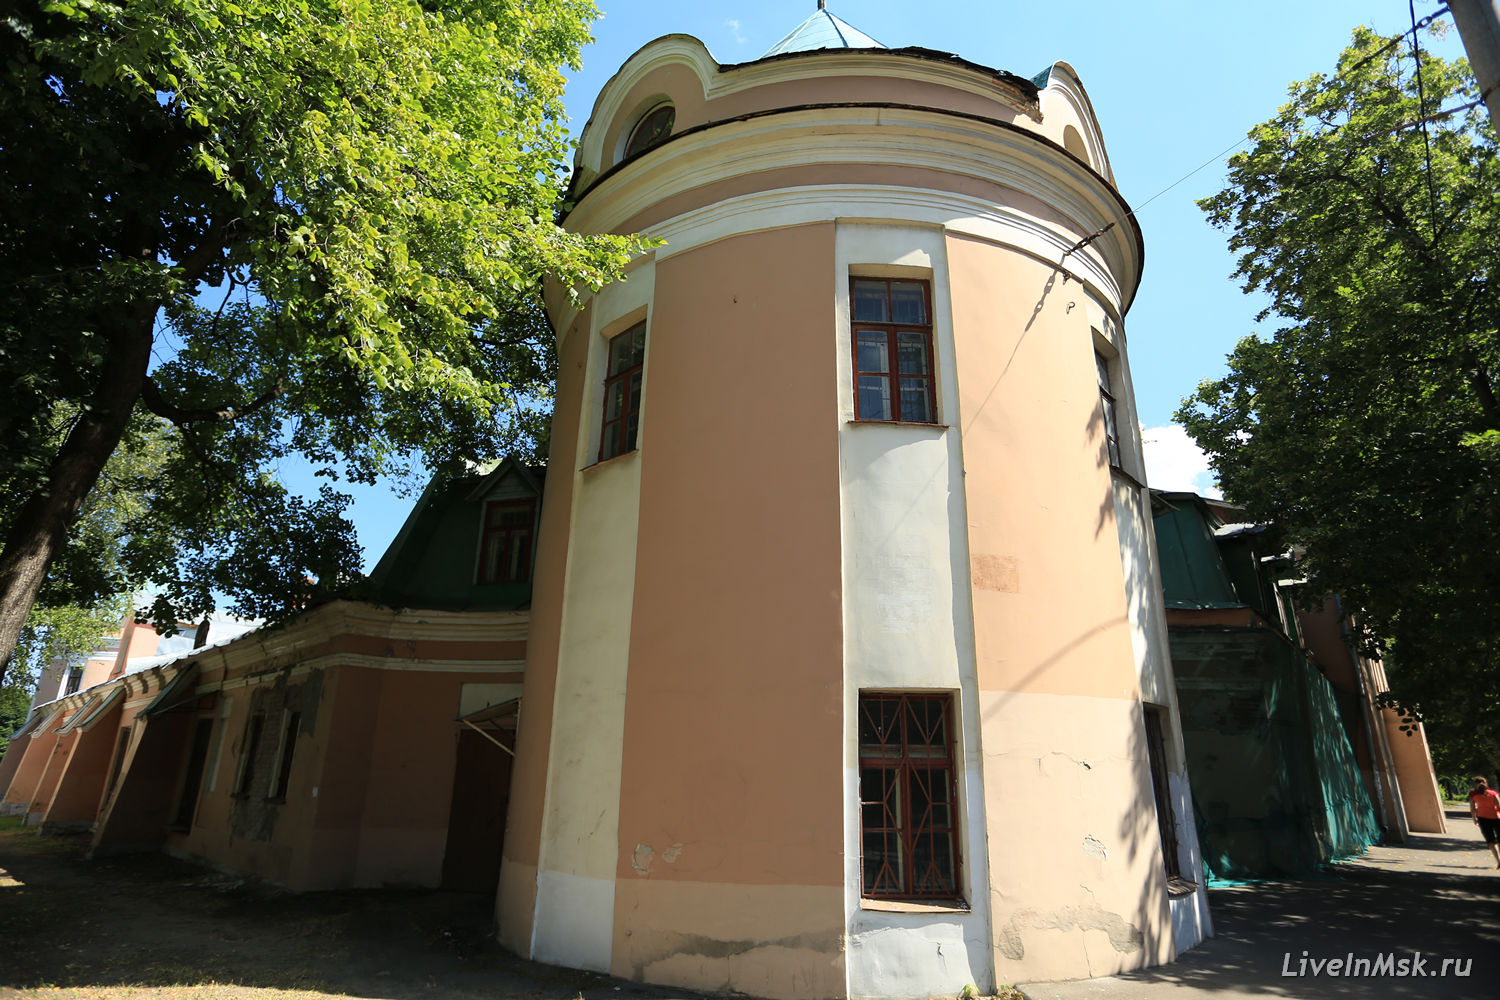 Тимирязевская академия